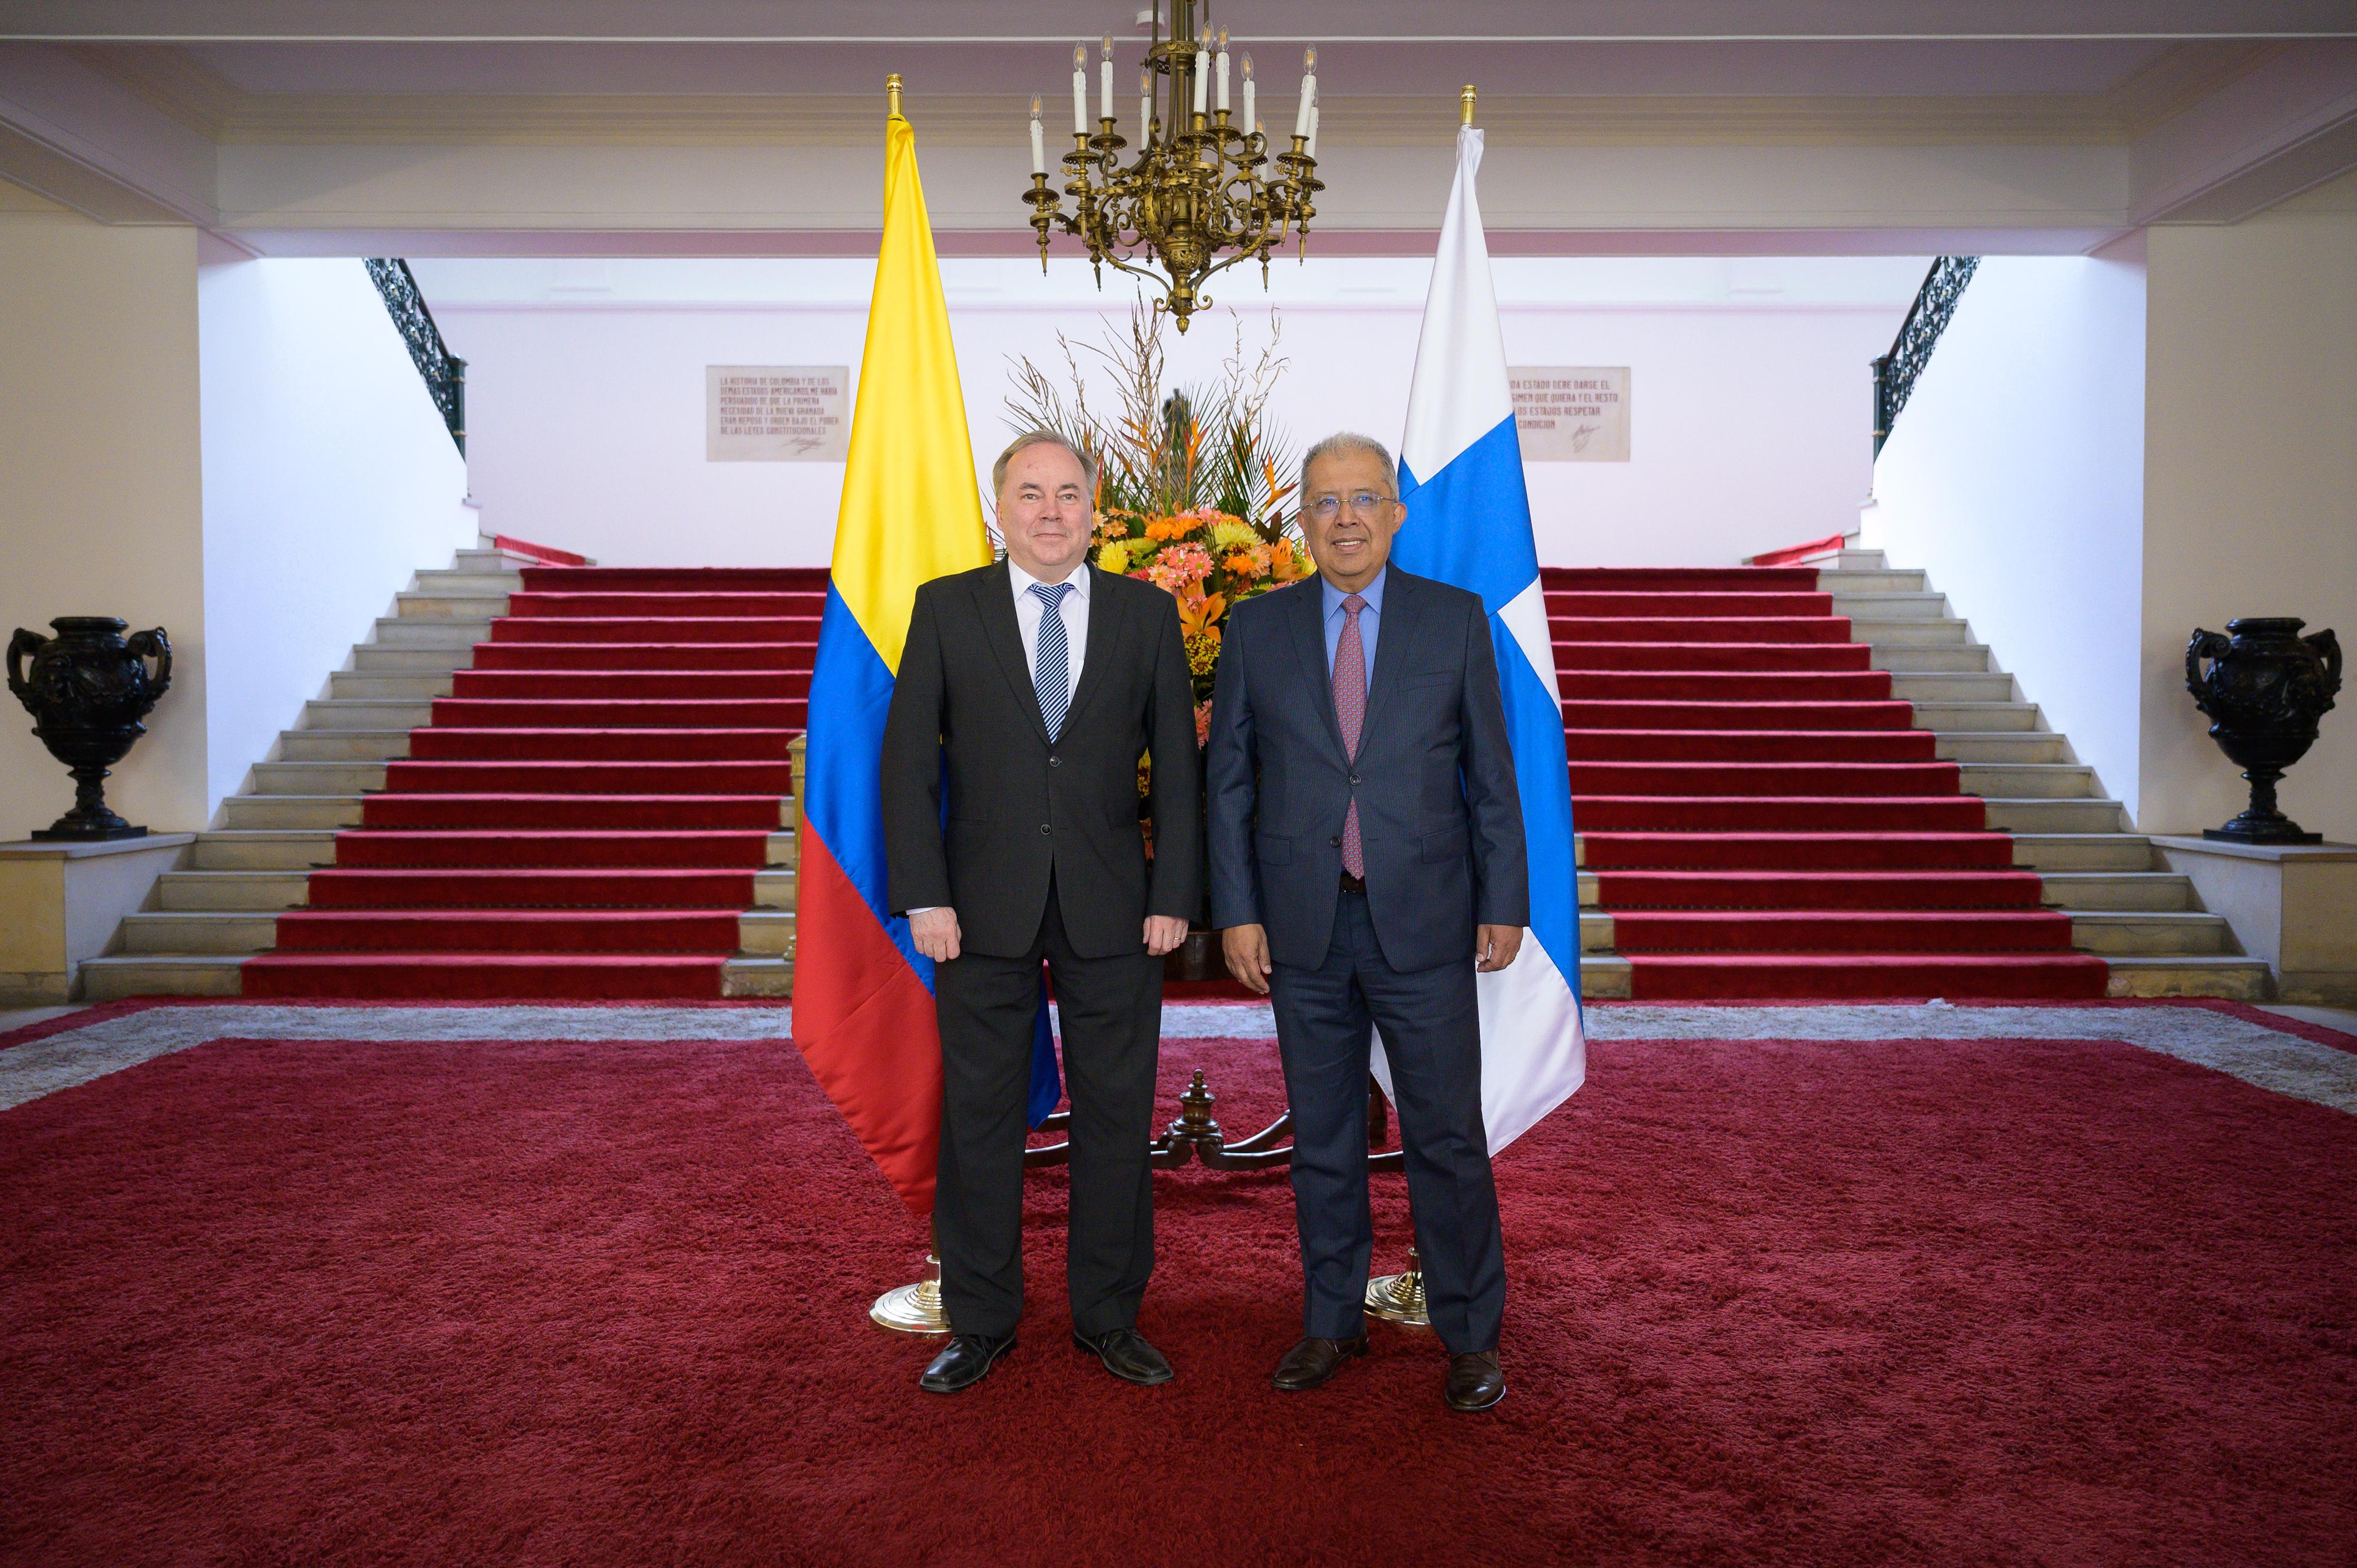 Comunicado conjunto: Colombia y Finlandia efectuaron la VI Reunión de Consultas Políticas en Bogotá